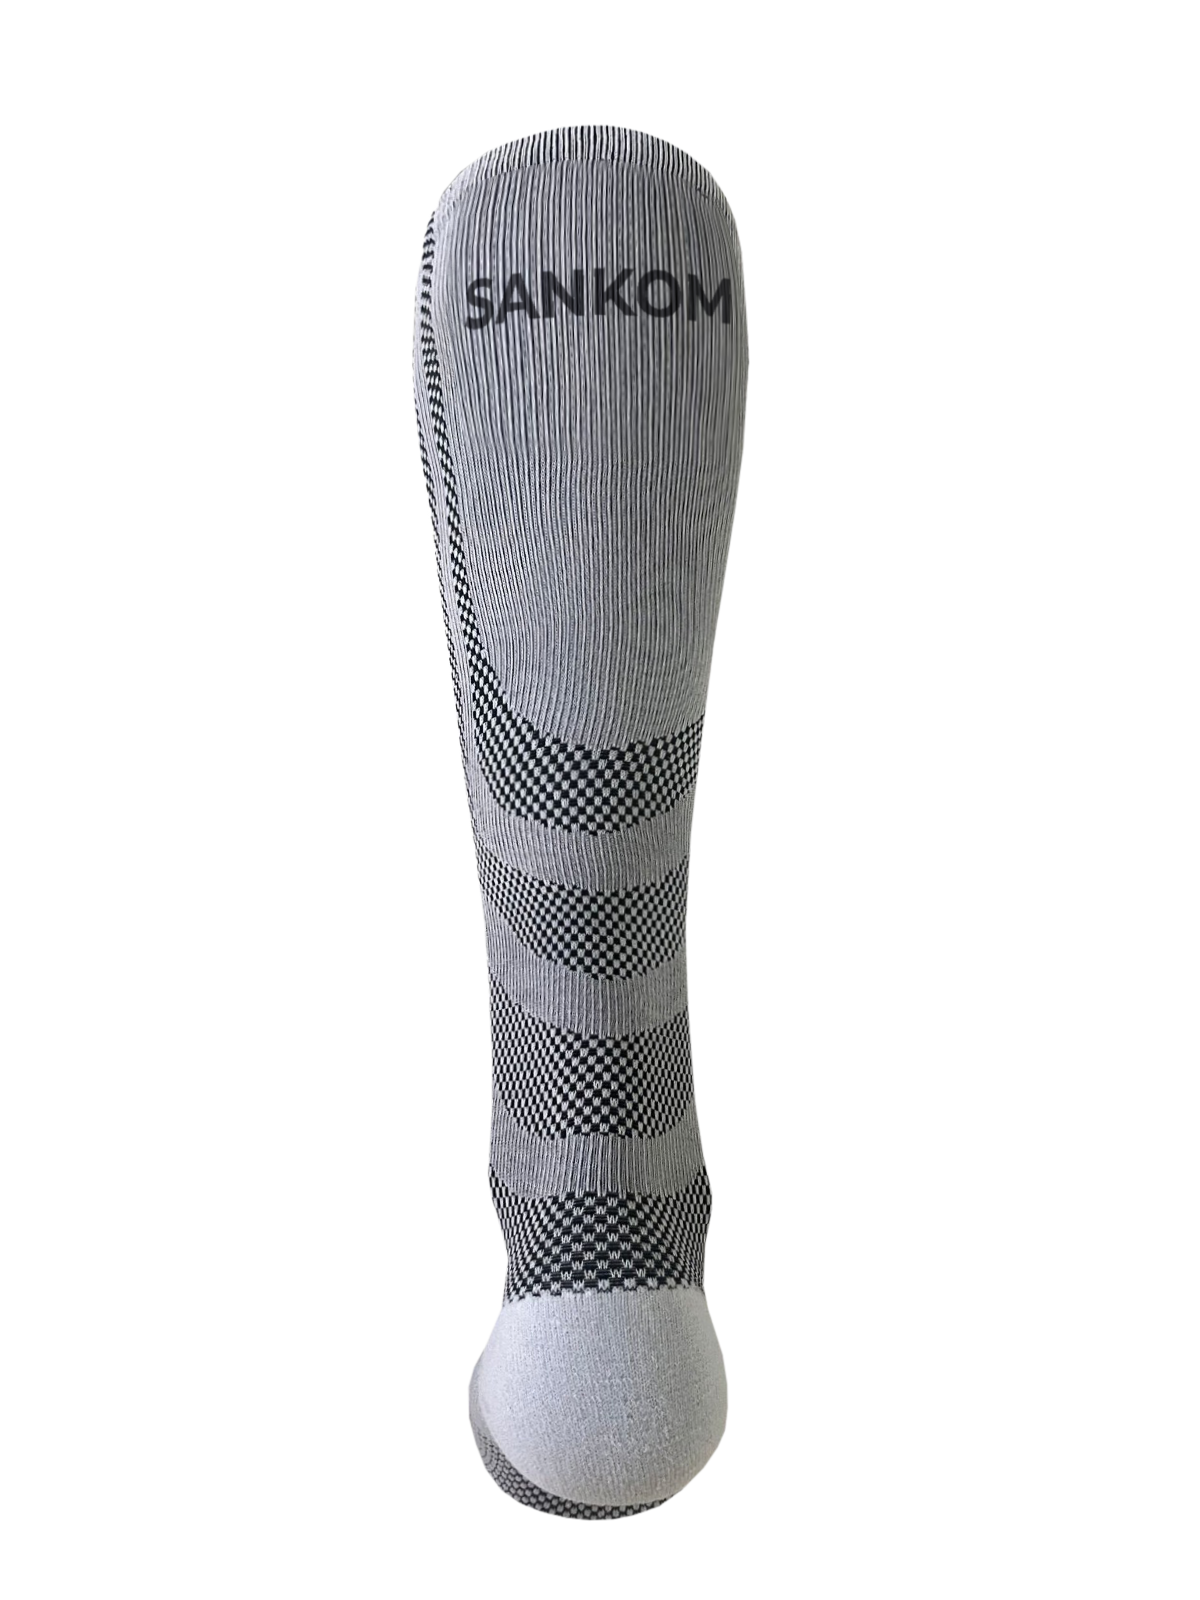 SANKOM Light kompressziós zokni